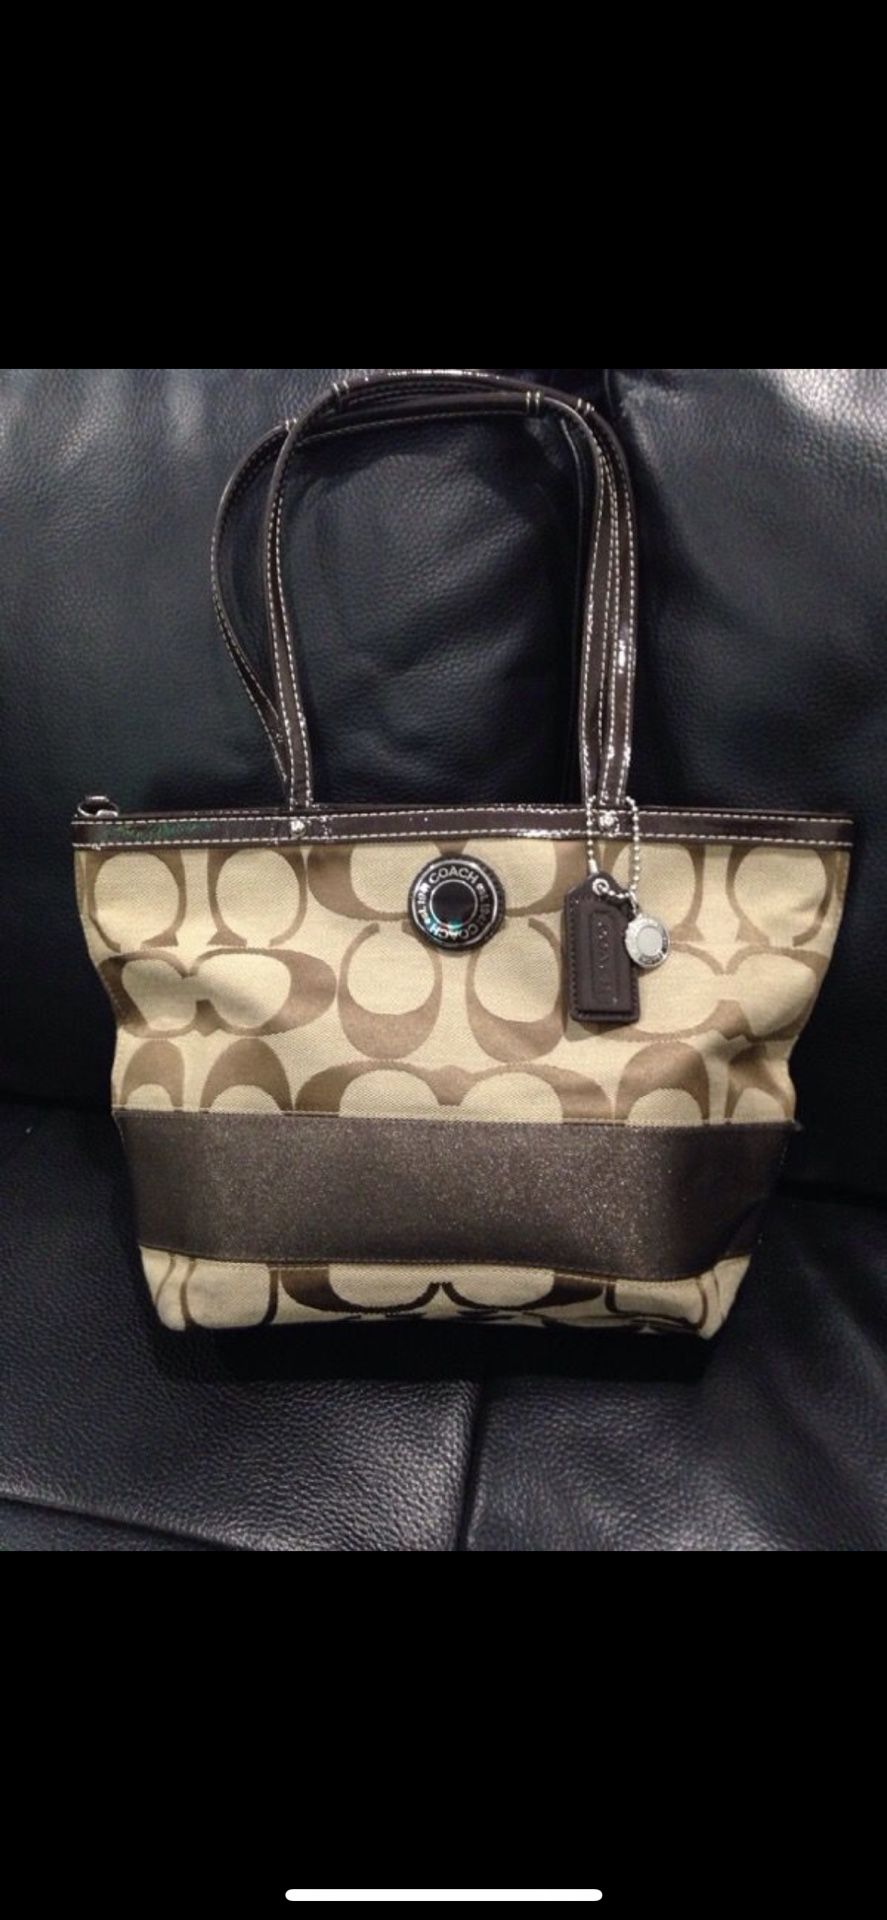 Coach Purse/ Handbag F19046 Signature Stripe Bag. Practically Brand New